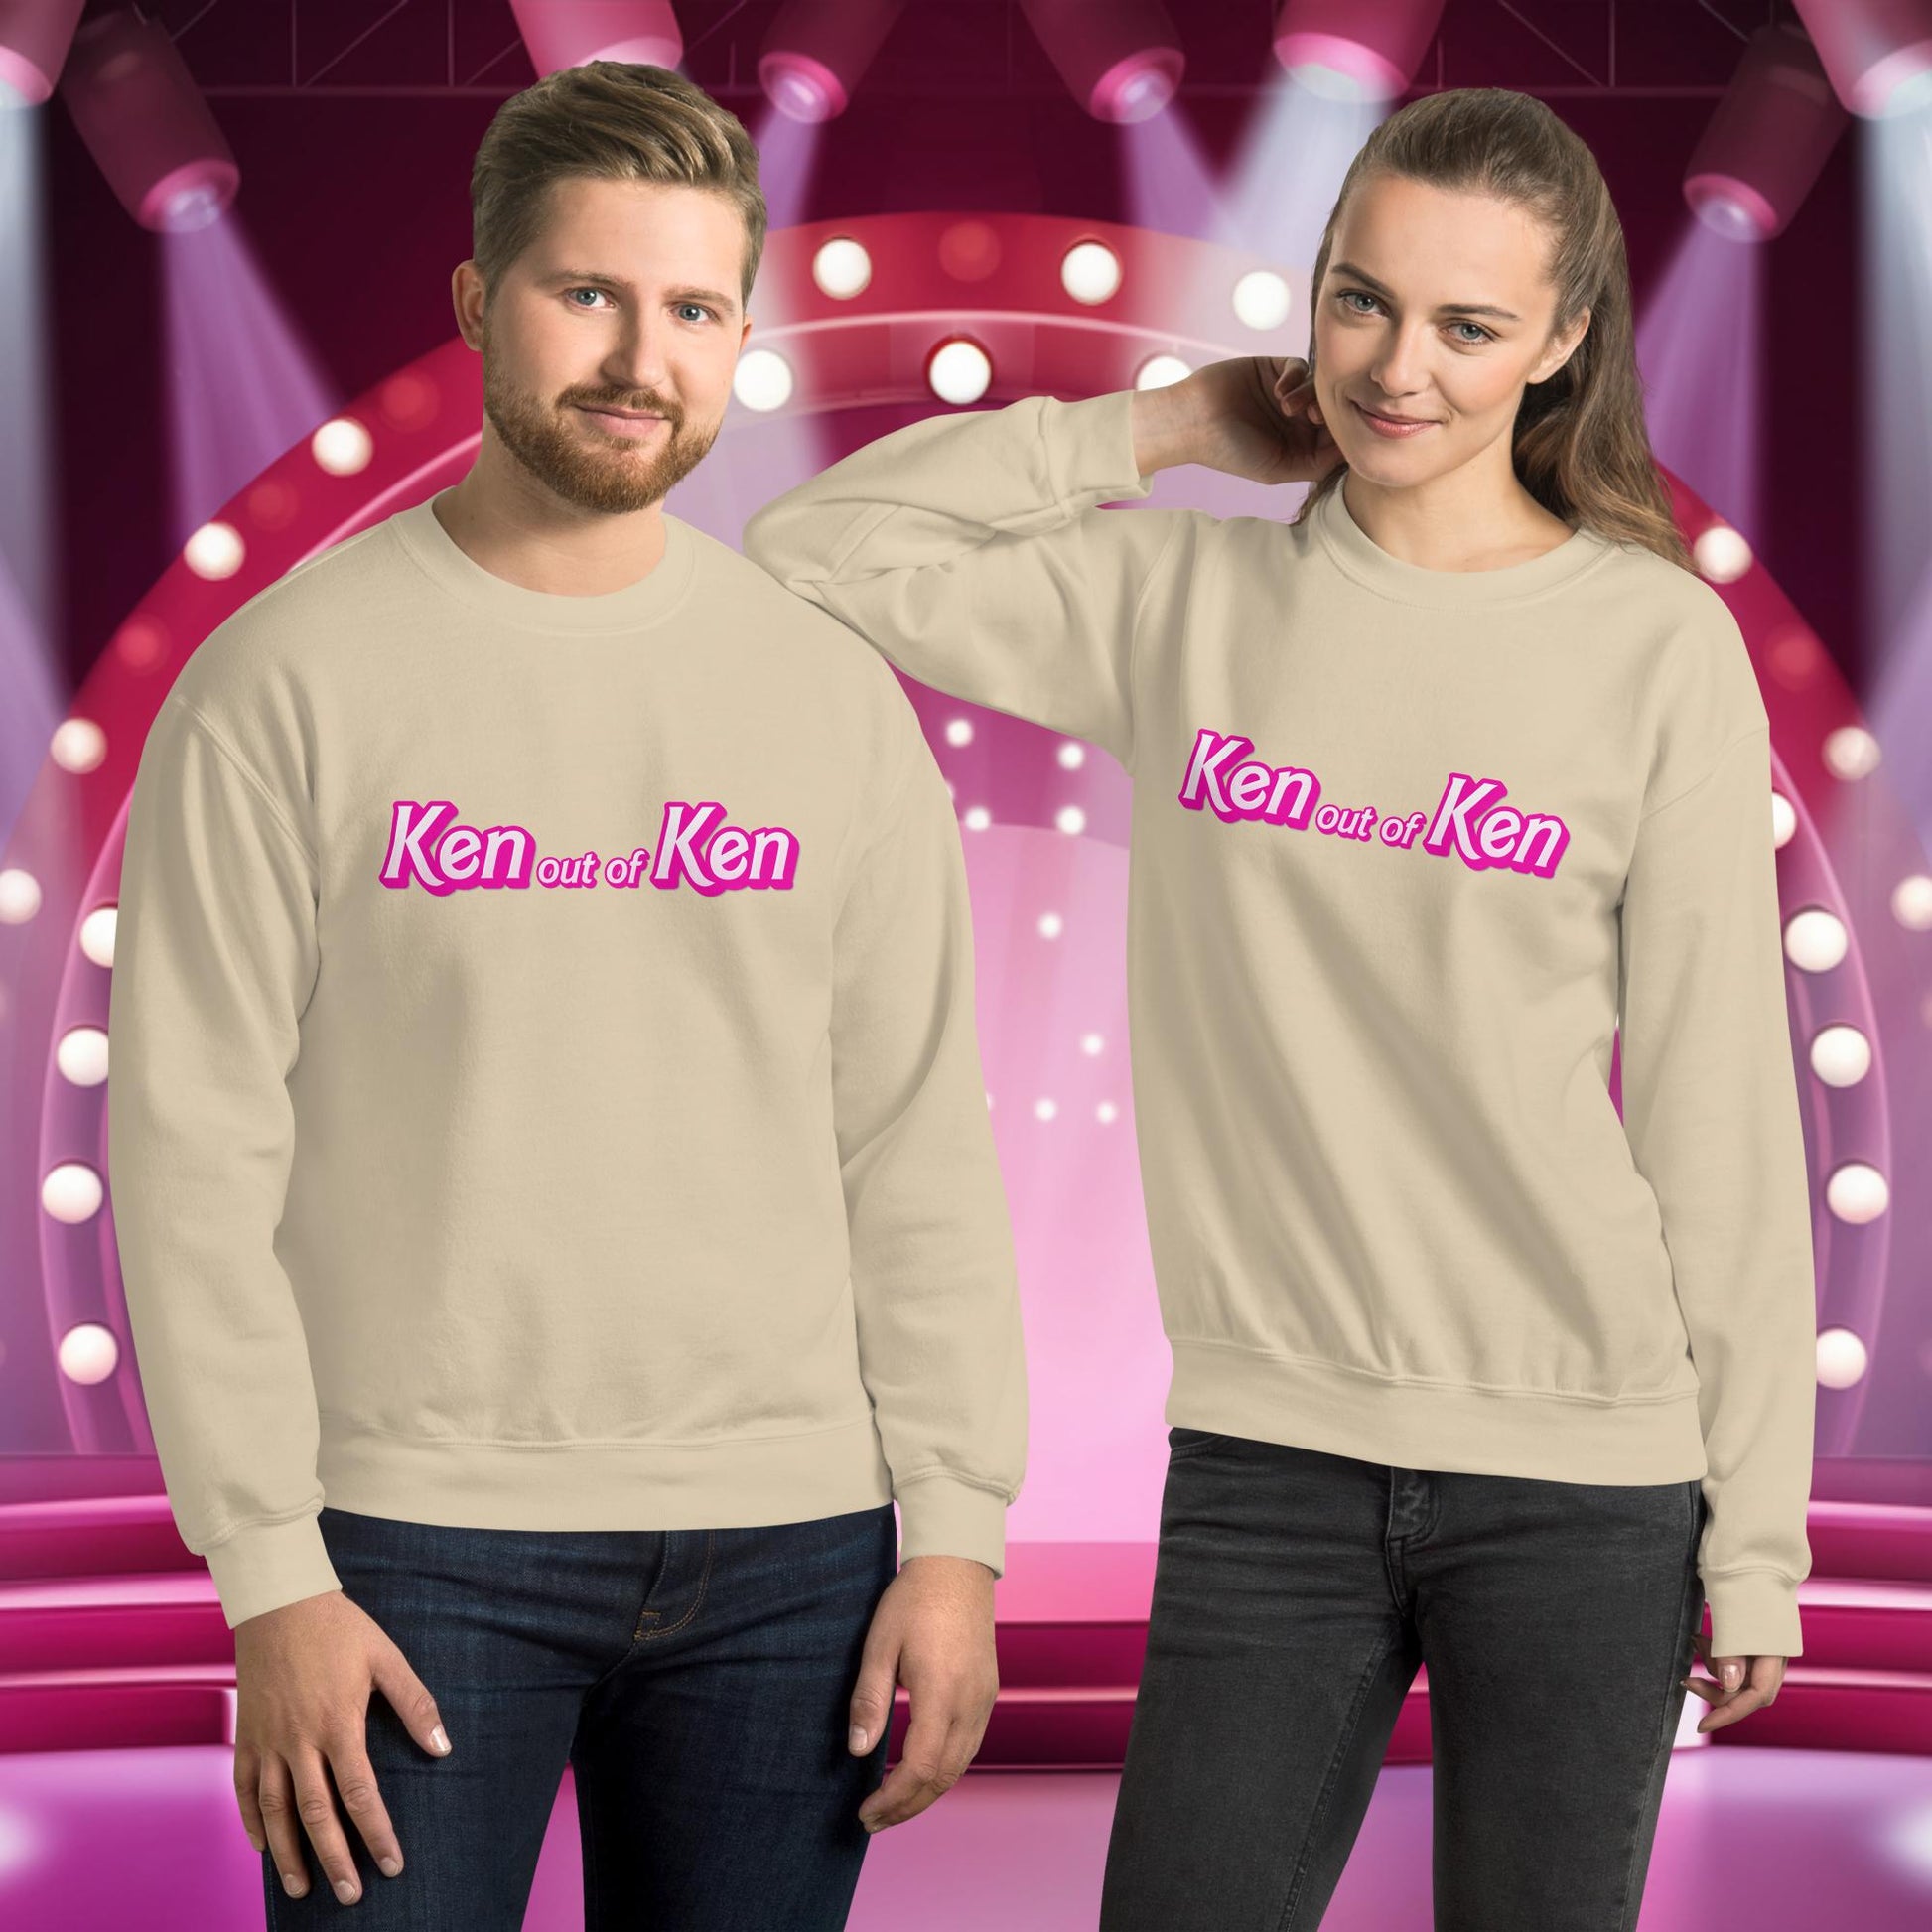 Ken out of Ken Barbie Movie Unisex Sweatshirt Next Cult Brand